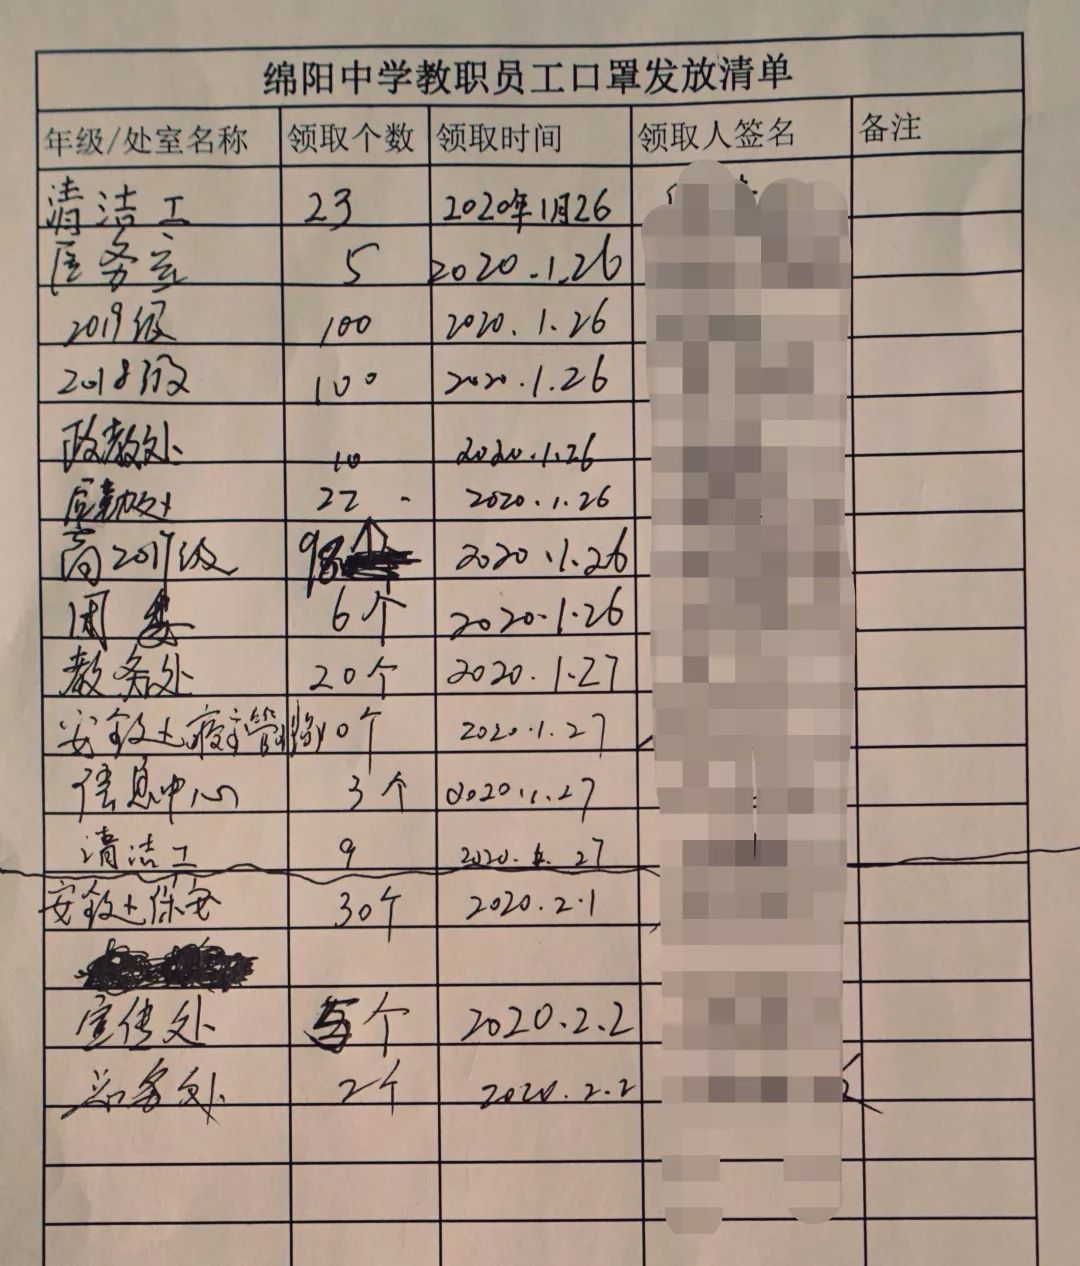 疫情防控办口罩发放登记表在日常教育教学工作中,刘老师师德高尚,勇于